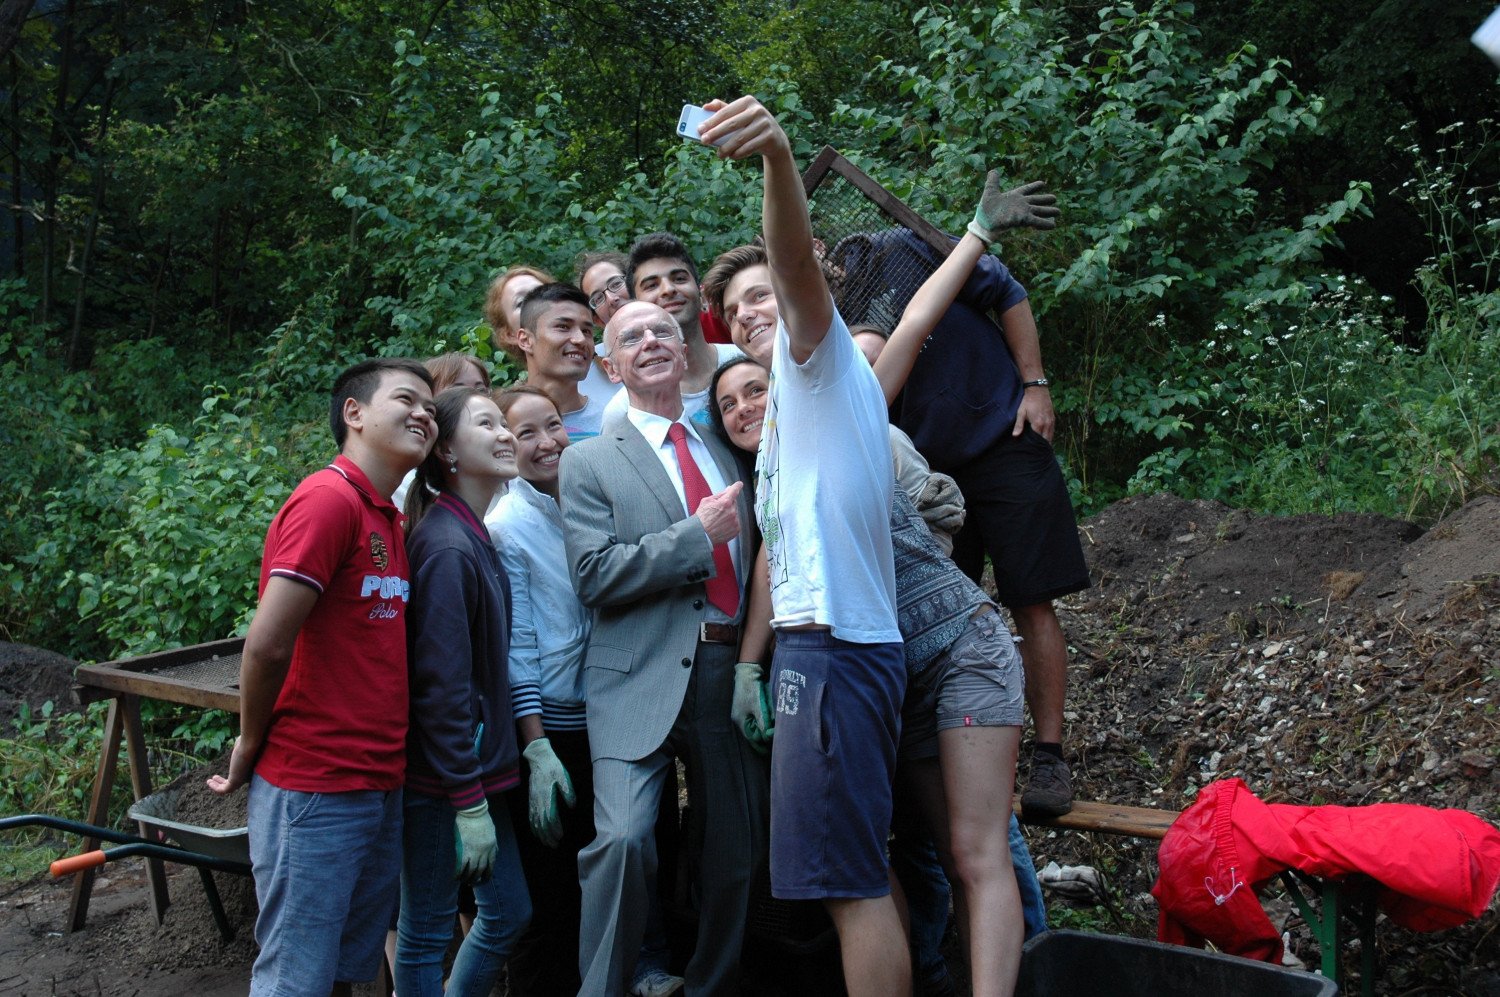 Eine Gruppe Jugendlicher hält ein Handy hoch, um ein Selfie zu erstellen mit dem Bürgerschaftspräsidenten. Die Stimmung ist ausgelassen und fröhlich. Christian Weber steht umringt von jungen Menschen unterschiedlicher Nationalitäten. Bis auf Weber tragen alle Arbeitskleidung.  